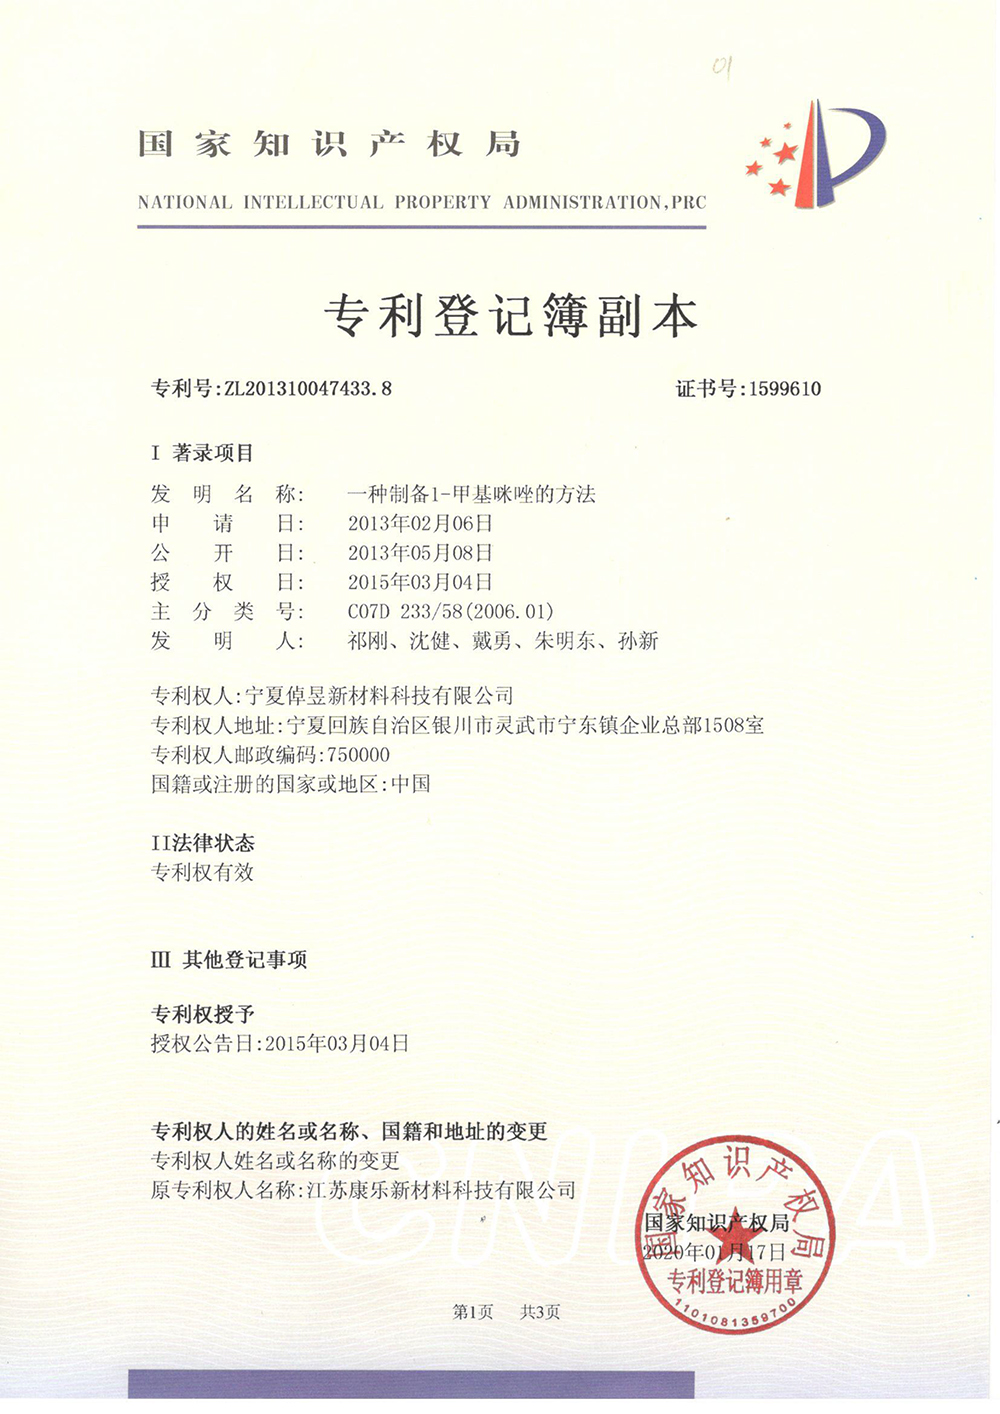 甲基咪唑的方法-专利登记薄-1_上海浩登材料股份有限公司